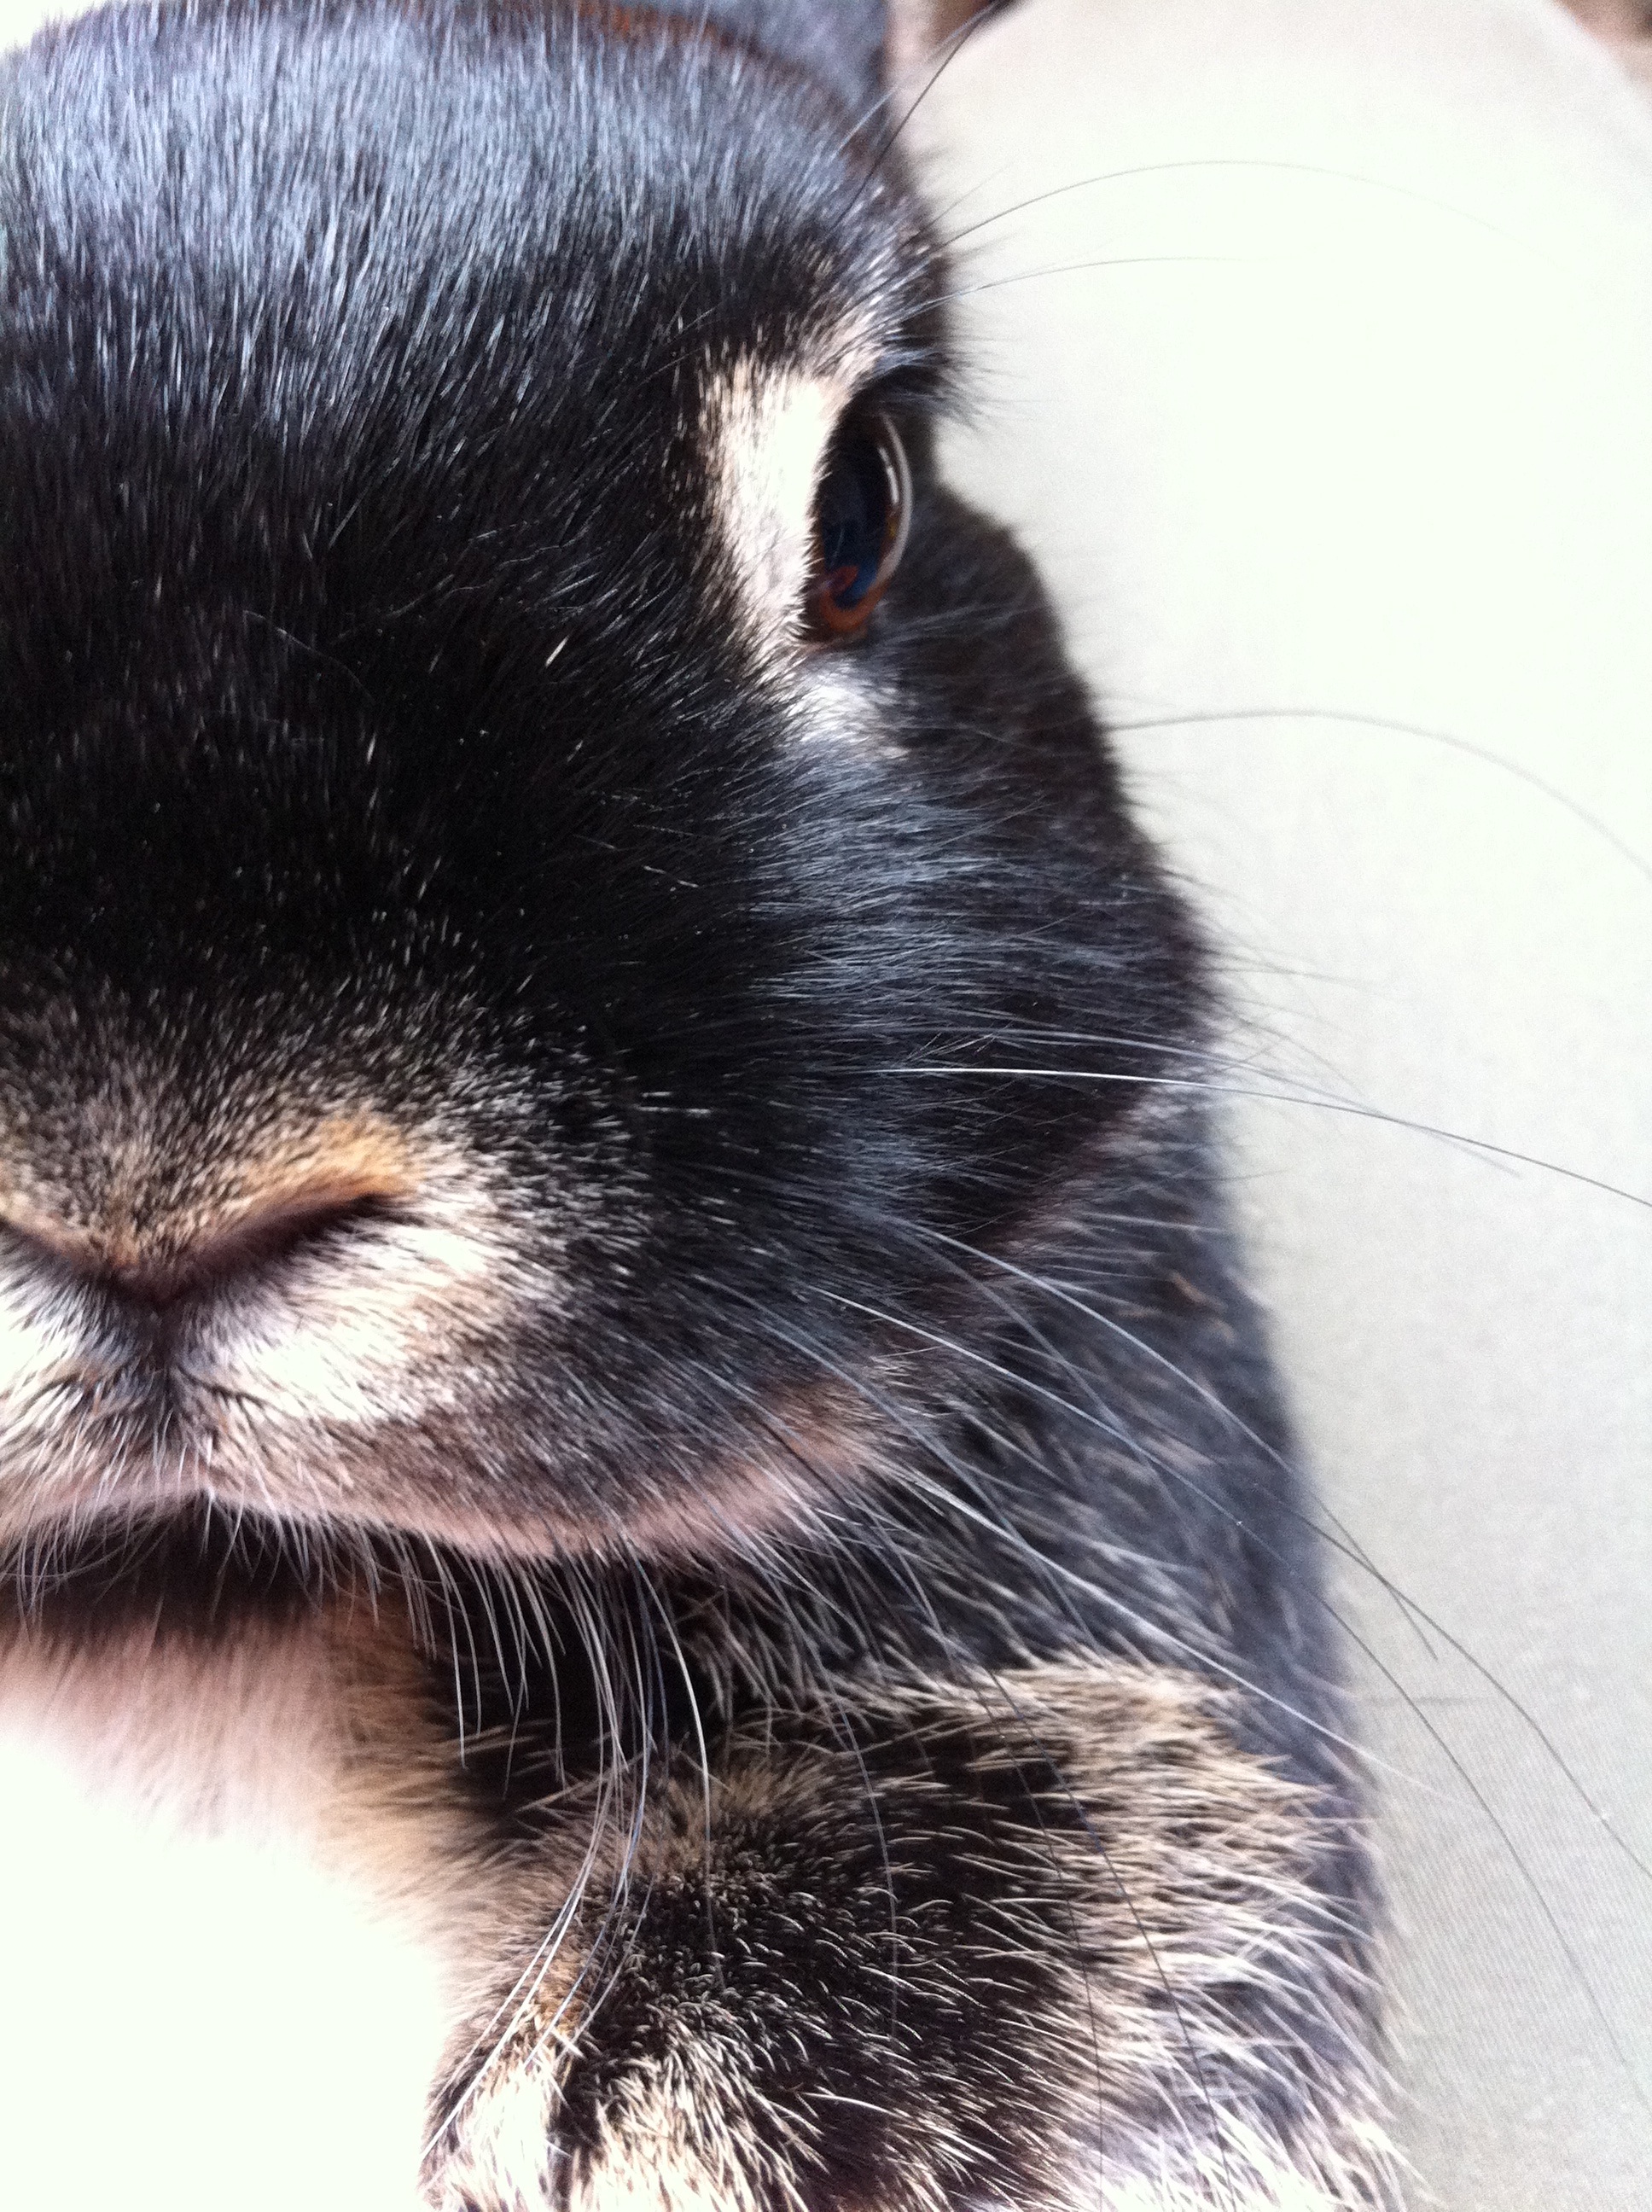 Bunny's Close-Up Portrait